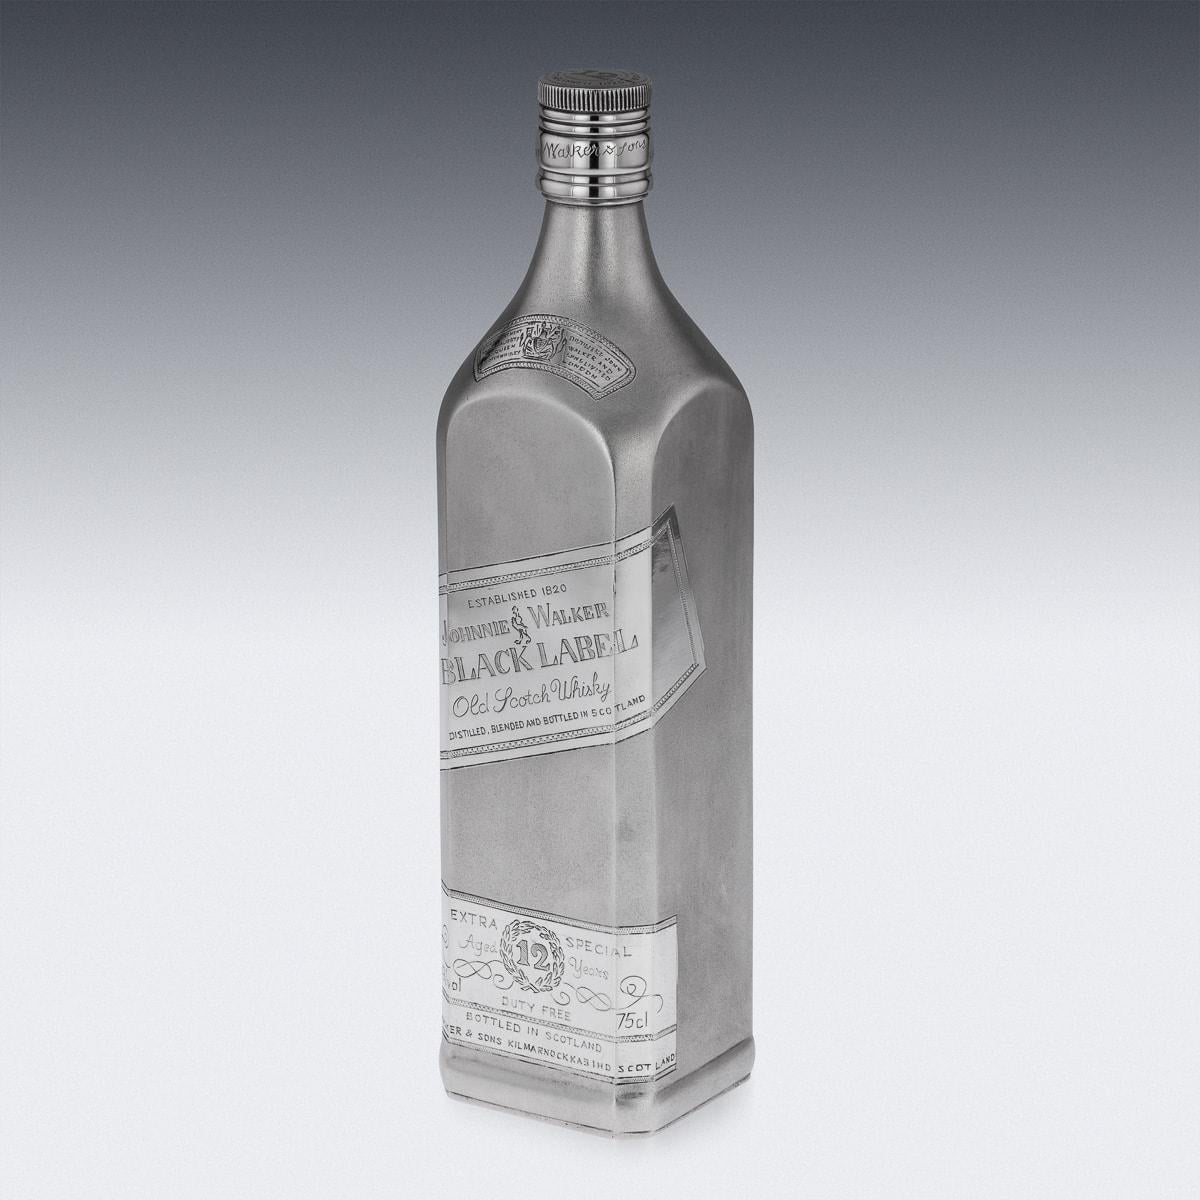 Bouteille de whisky Johnnie Walker en argent massif, de grande taille et de forte épaisseur, de forme rectangulaire avec finition givrée, gravée d'étiquettes représentant une bouteille de Johnnie Walker, avec bouchon à vis également gravé. La base